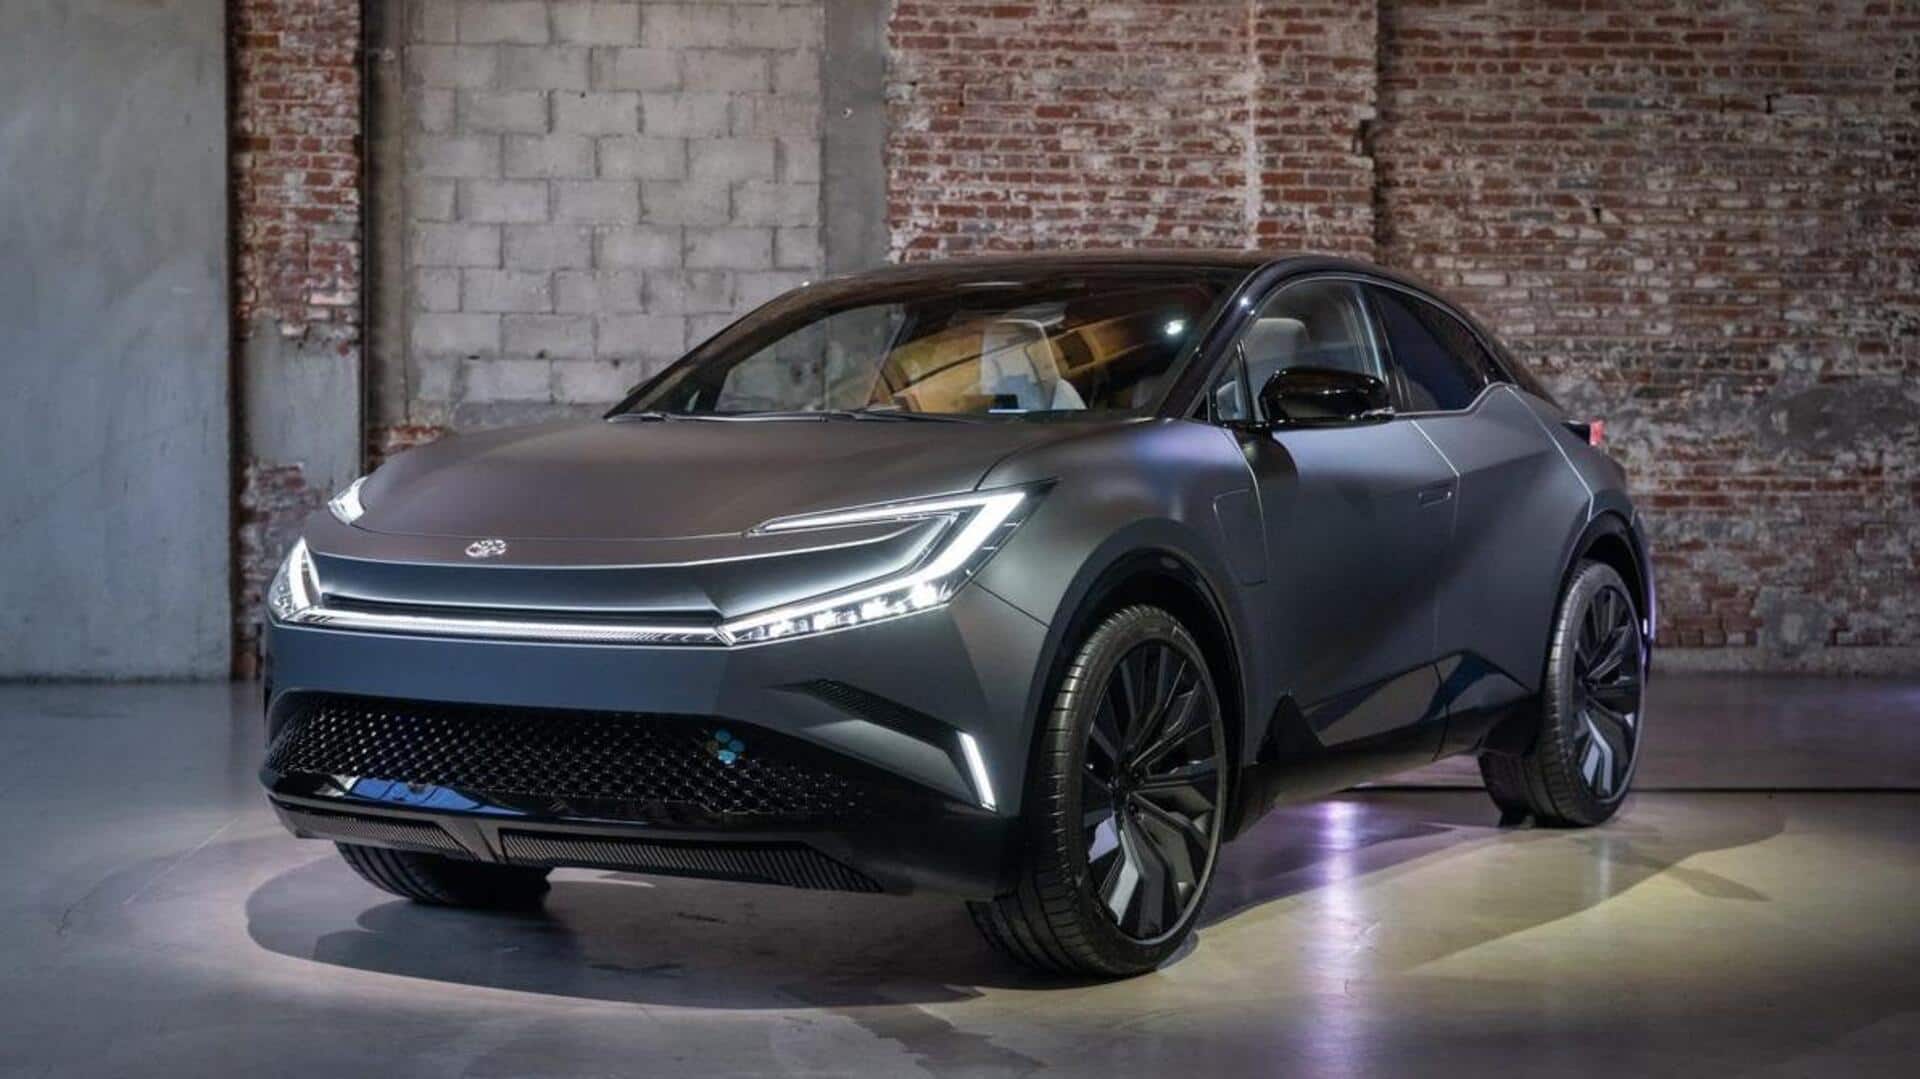 Toyota-Suzuki working on bZ small EV, debut in 2025